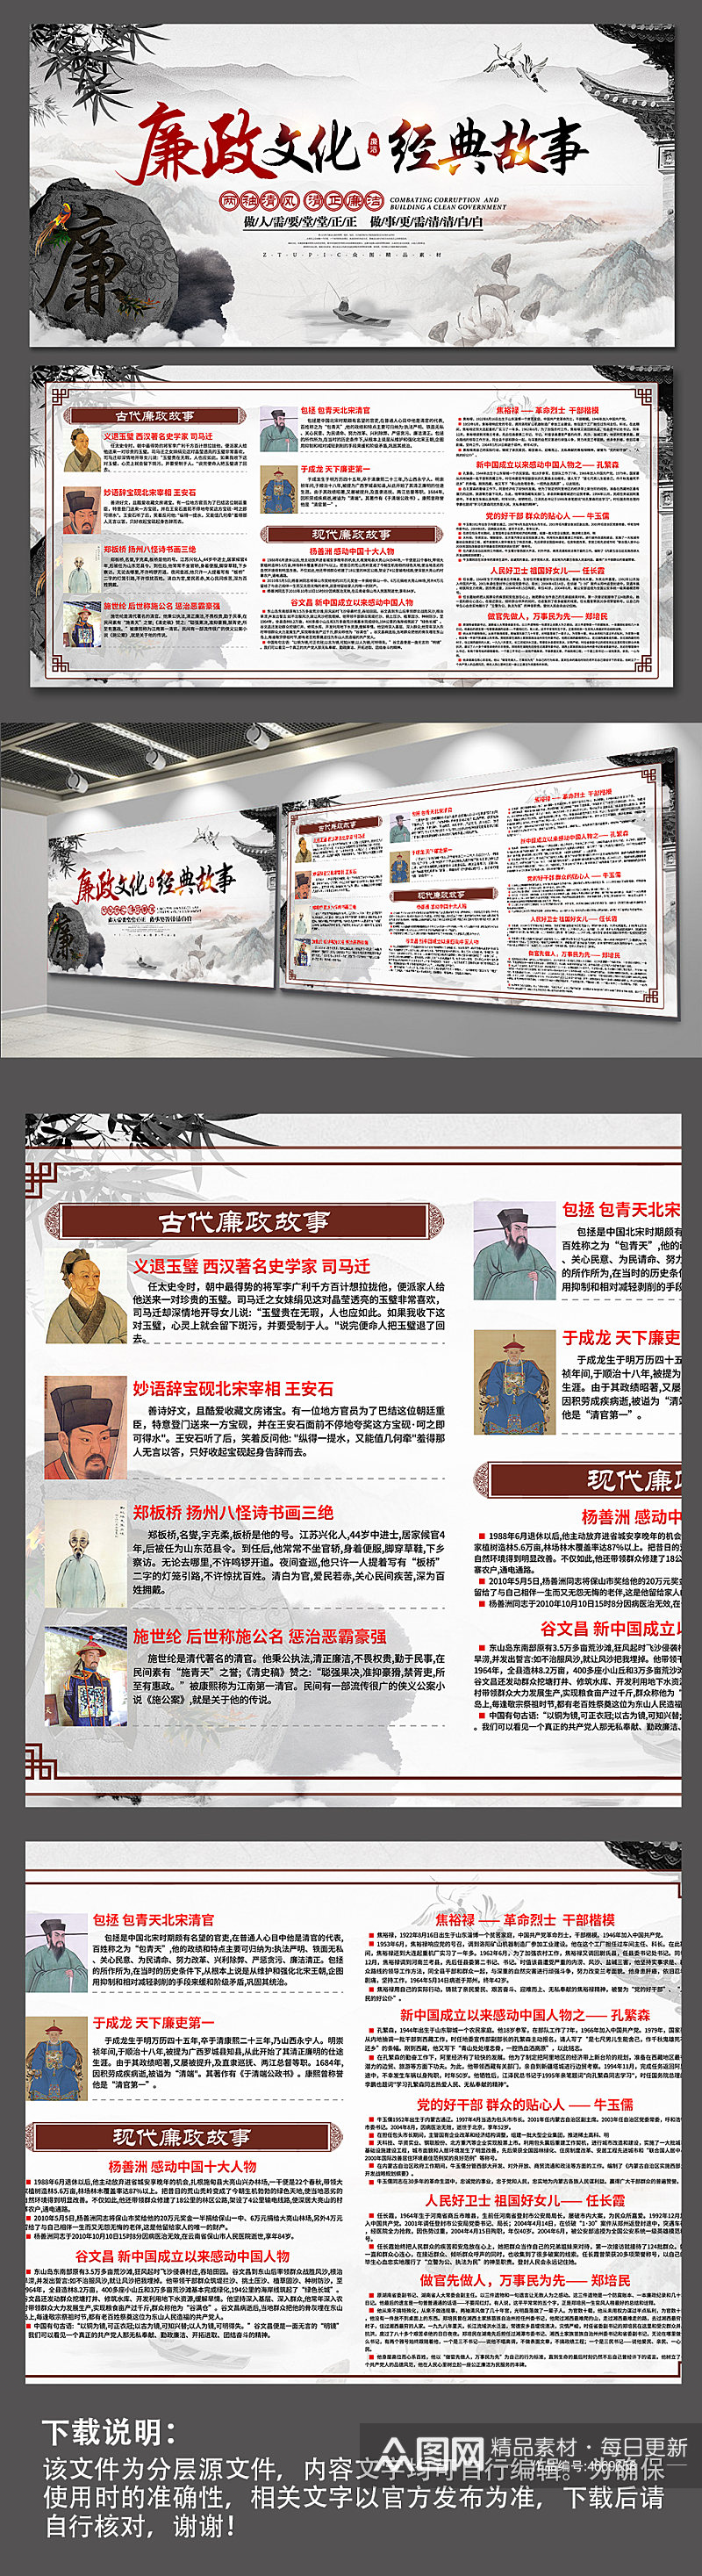 中国风廉政文化典故定稿设计图展板海报素材